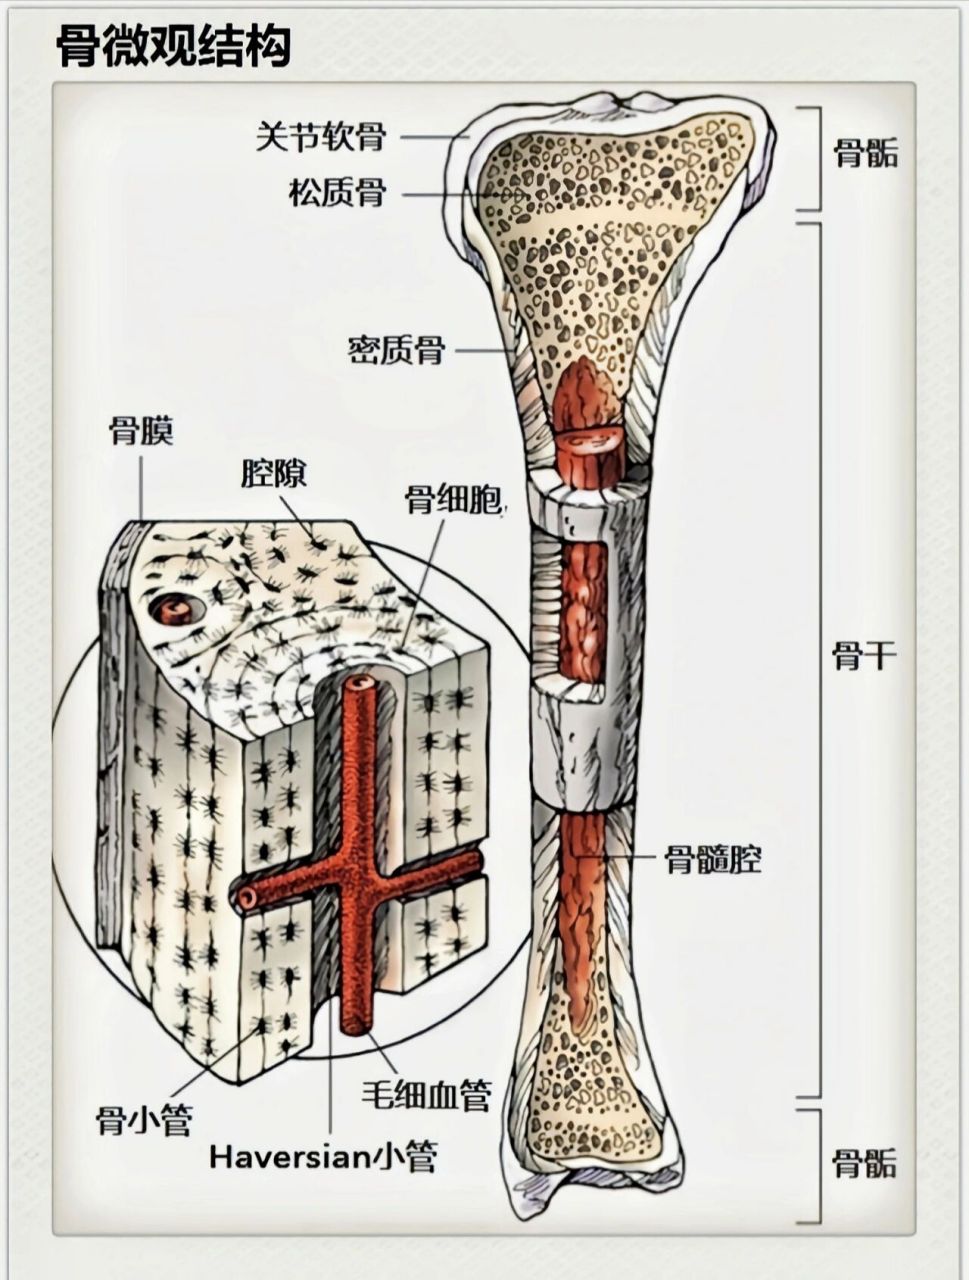 骨的基本结构 骨的结构包括: 骨膜:骨膜是骨表面除关节外所被覆的坚固